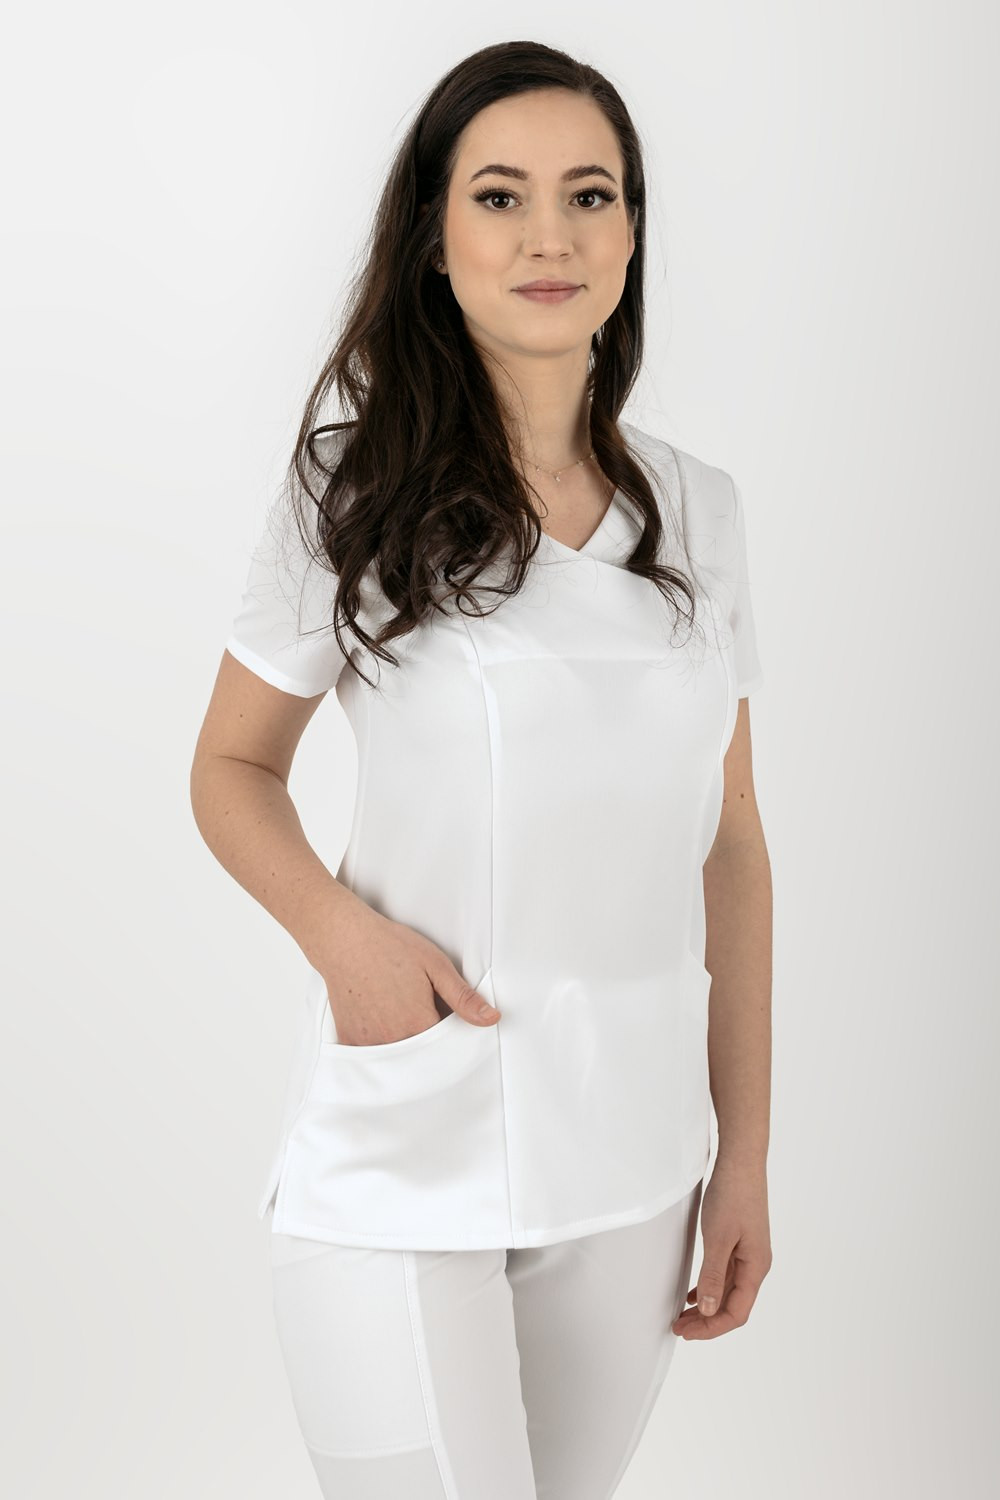 Elastyczna bluza medyczna damska / scrubs M-330XC biały